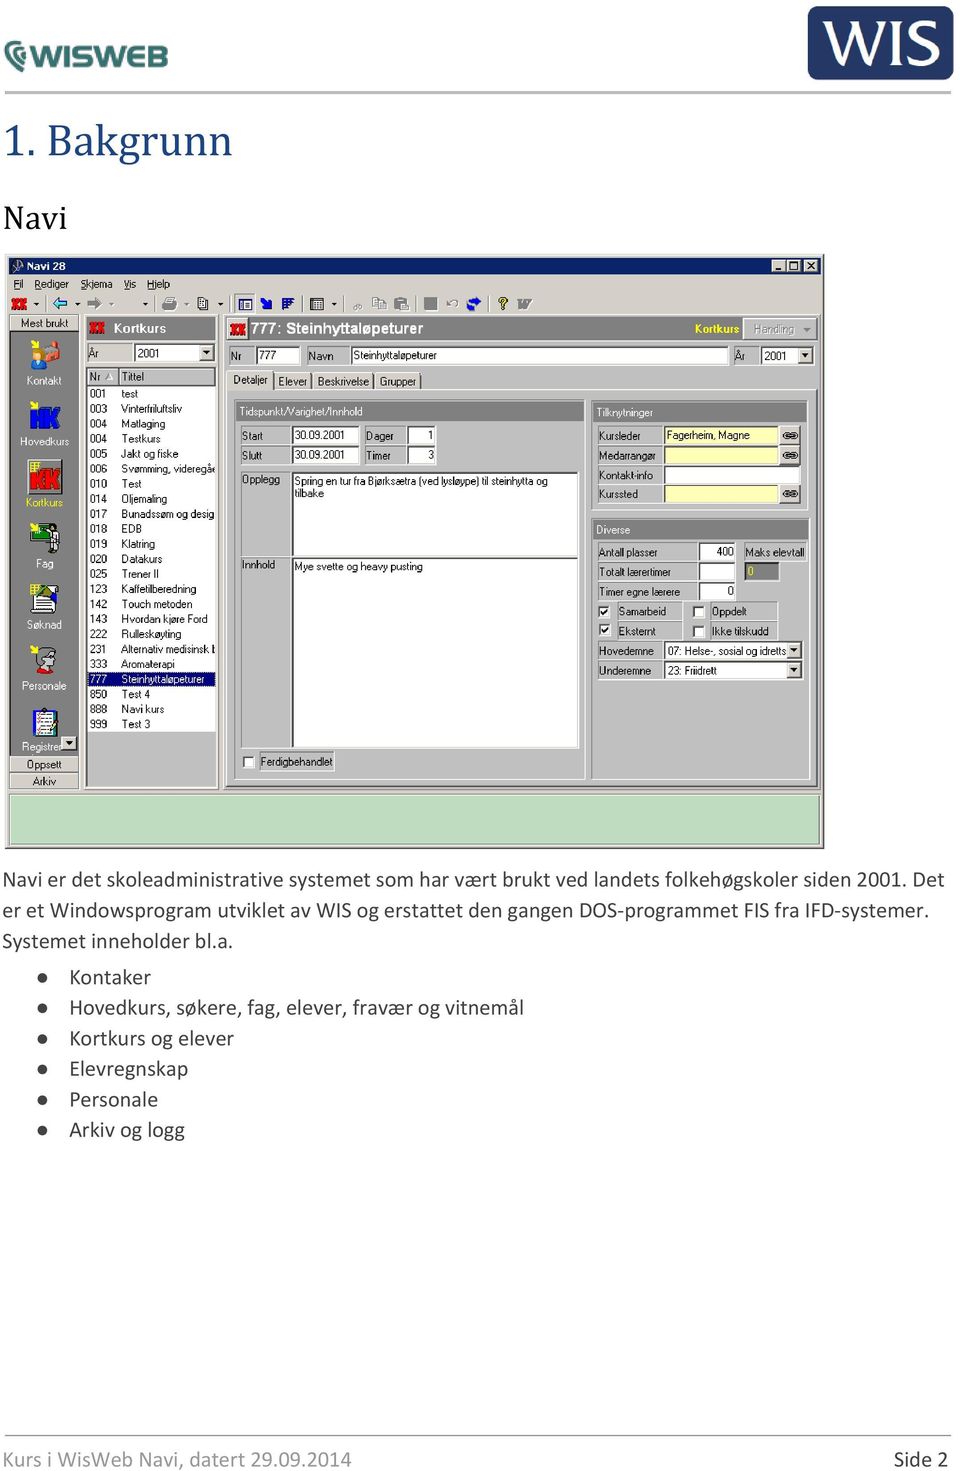 Det er et Windowsprogram utviklet av WIS og erstattet den gangen DOS-programmet FIS fra IFD-systemer.